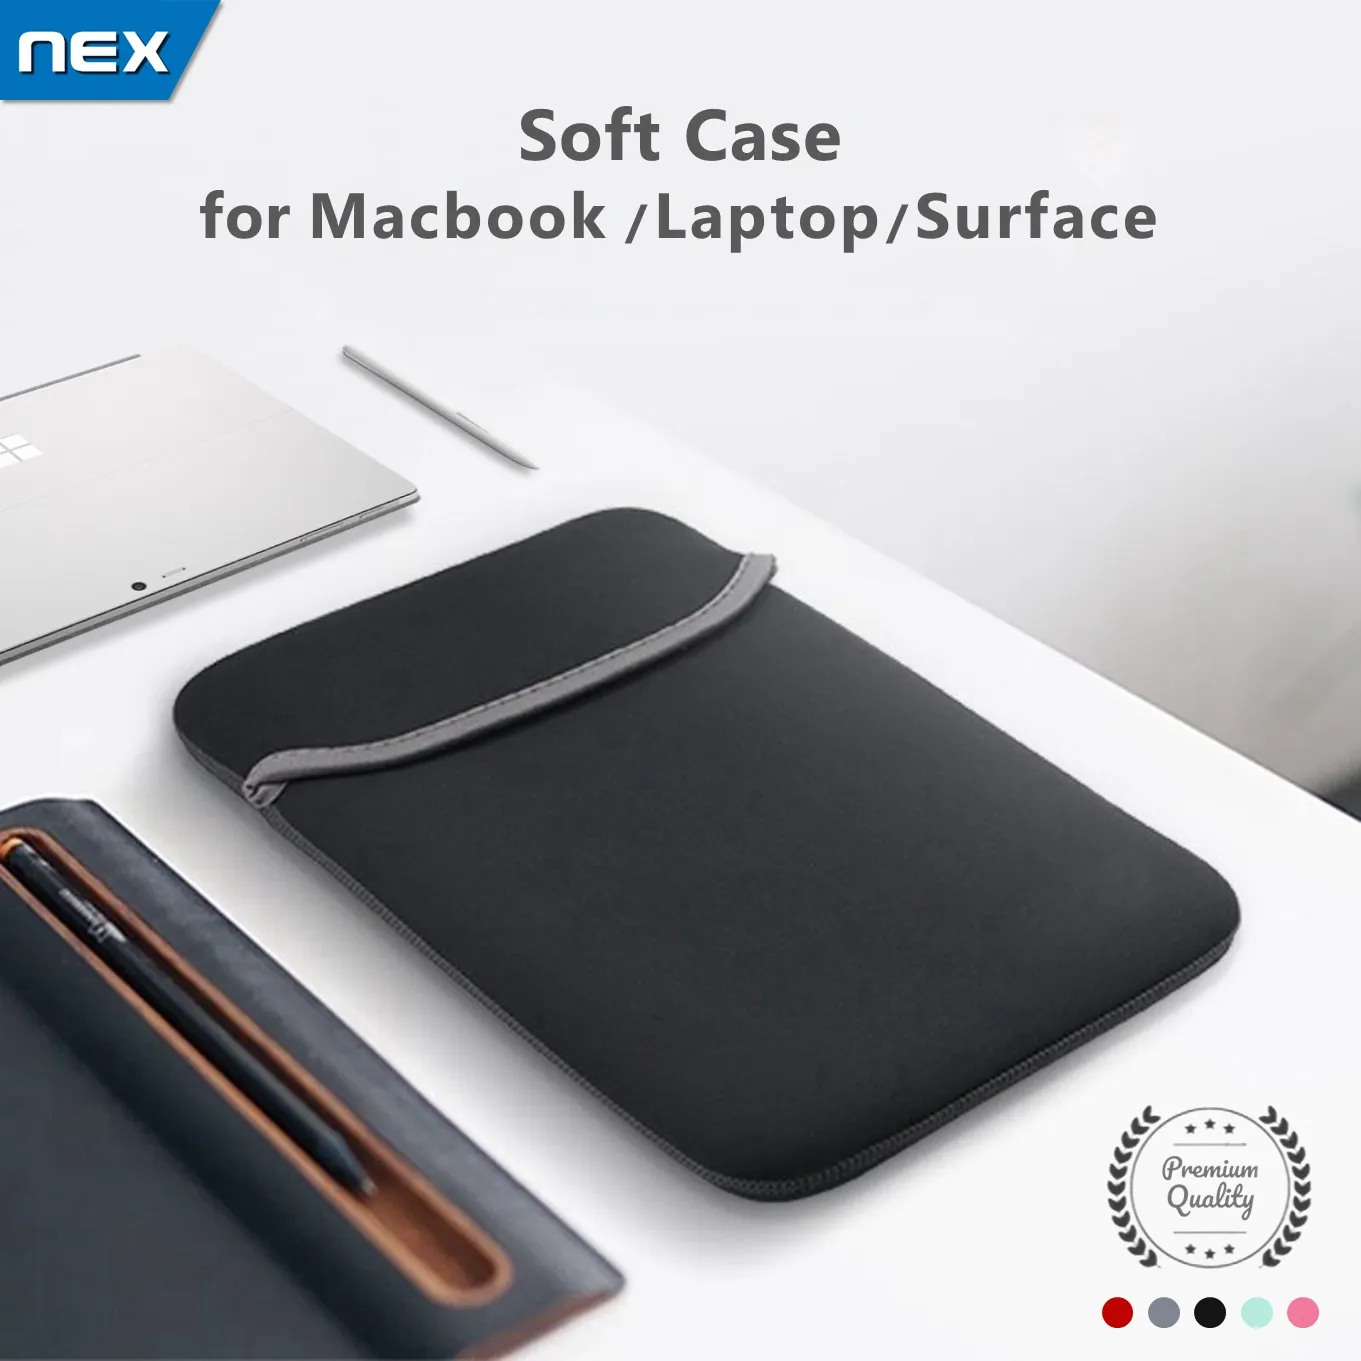 NEX กระเป๋าโน๊ตบุ๊ค เคสโน๊ตบุ๊ค ซองแล็ปท็อป iPad เคสแท็บเล็ต soft case เคสMacbook Air Pro ซองโน๊ตบุ๊ค 10 11 12 13 14 15นิ้ว กระเป๋าMacbook เคสไอแพด Laptop Sleeve Case